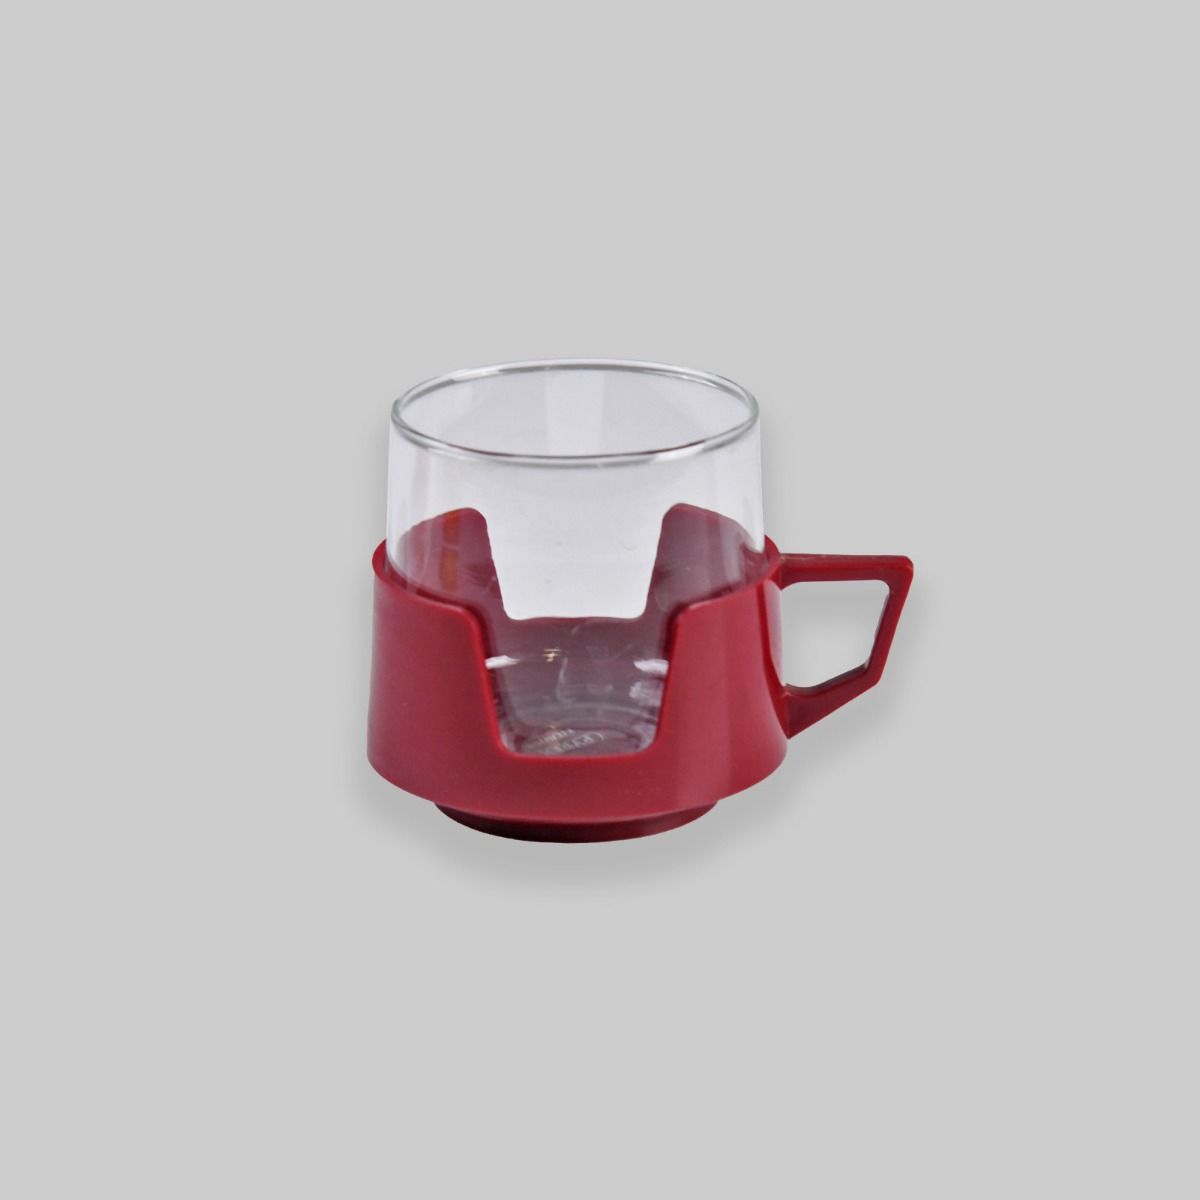 Vintage JAJ Pyrex Drink-Up Glass Mug With Plastic Casing